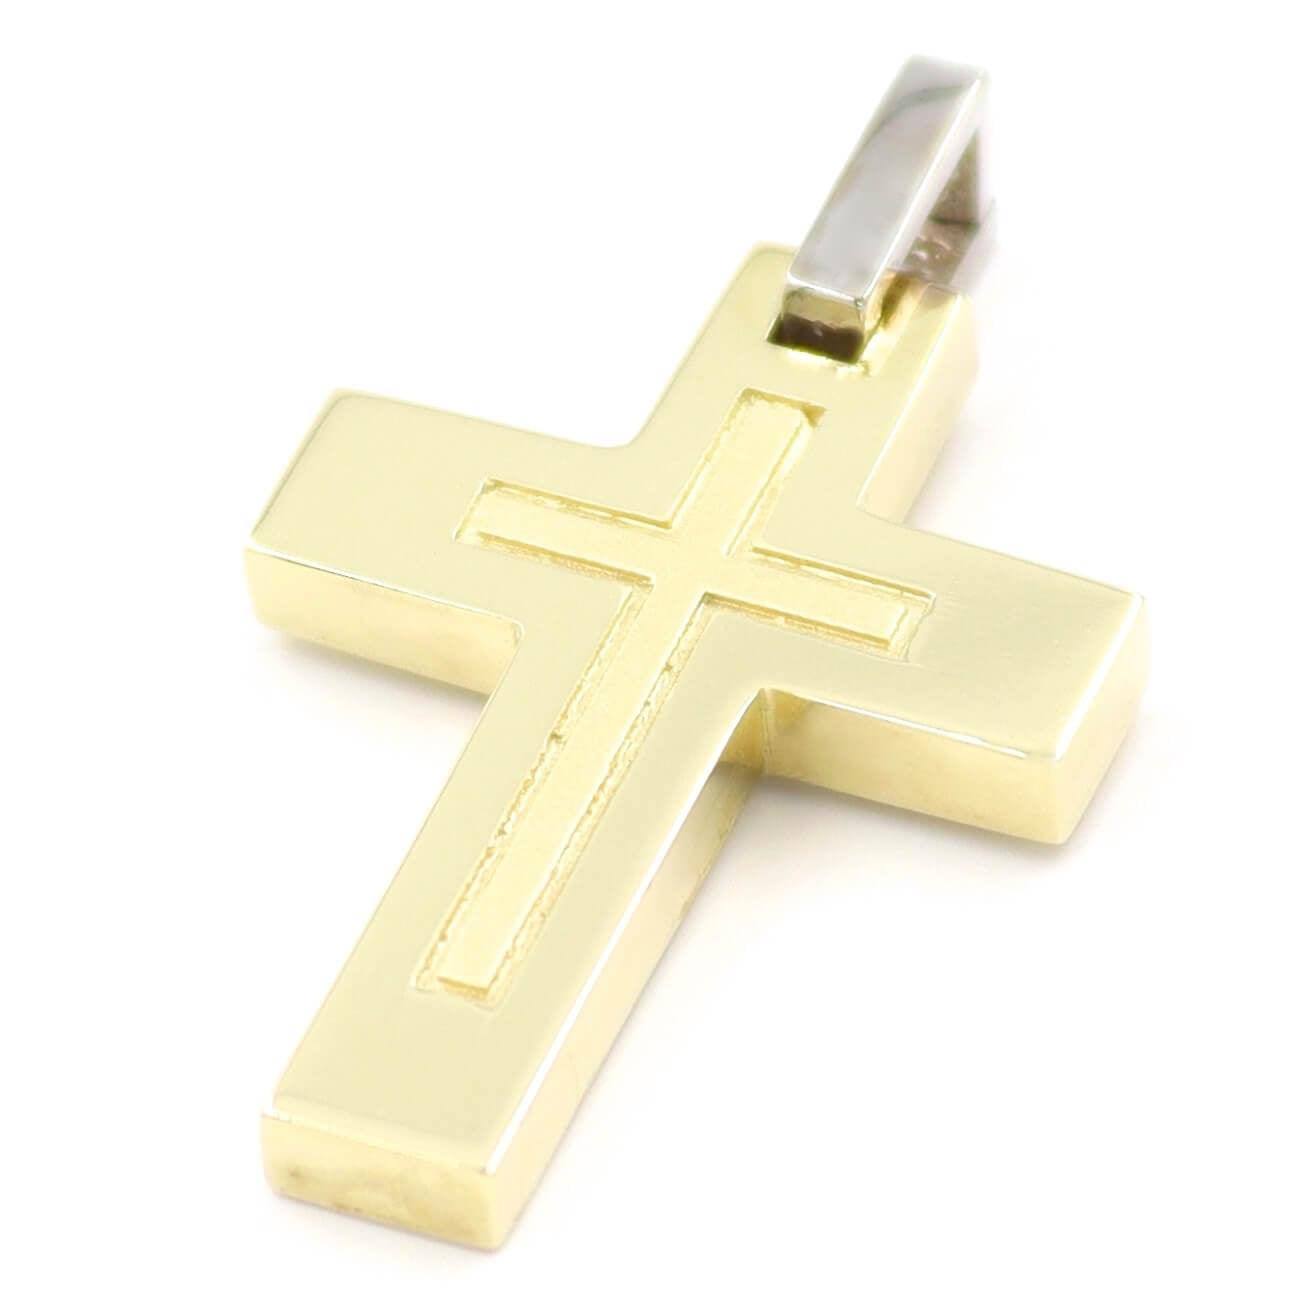 Χρυσός σταυρός σε διχρωμία, από μέταλλο 14 καρατίων